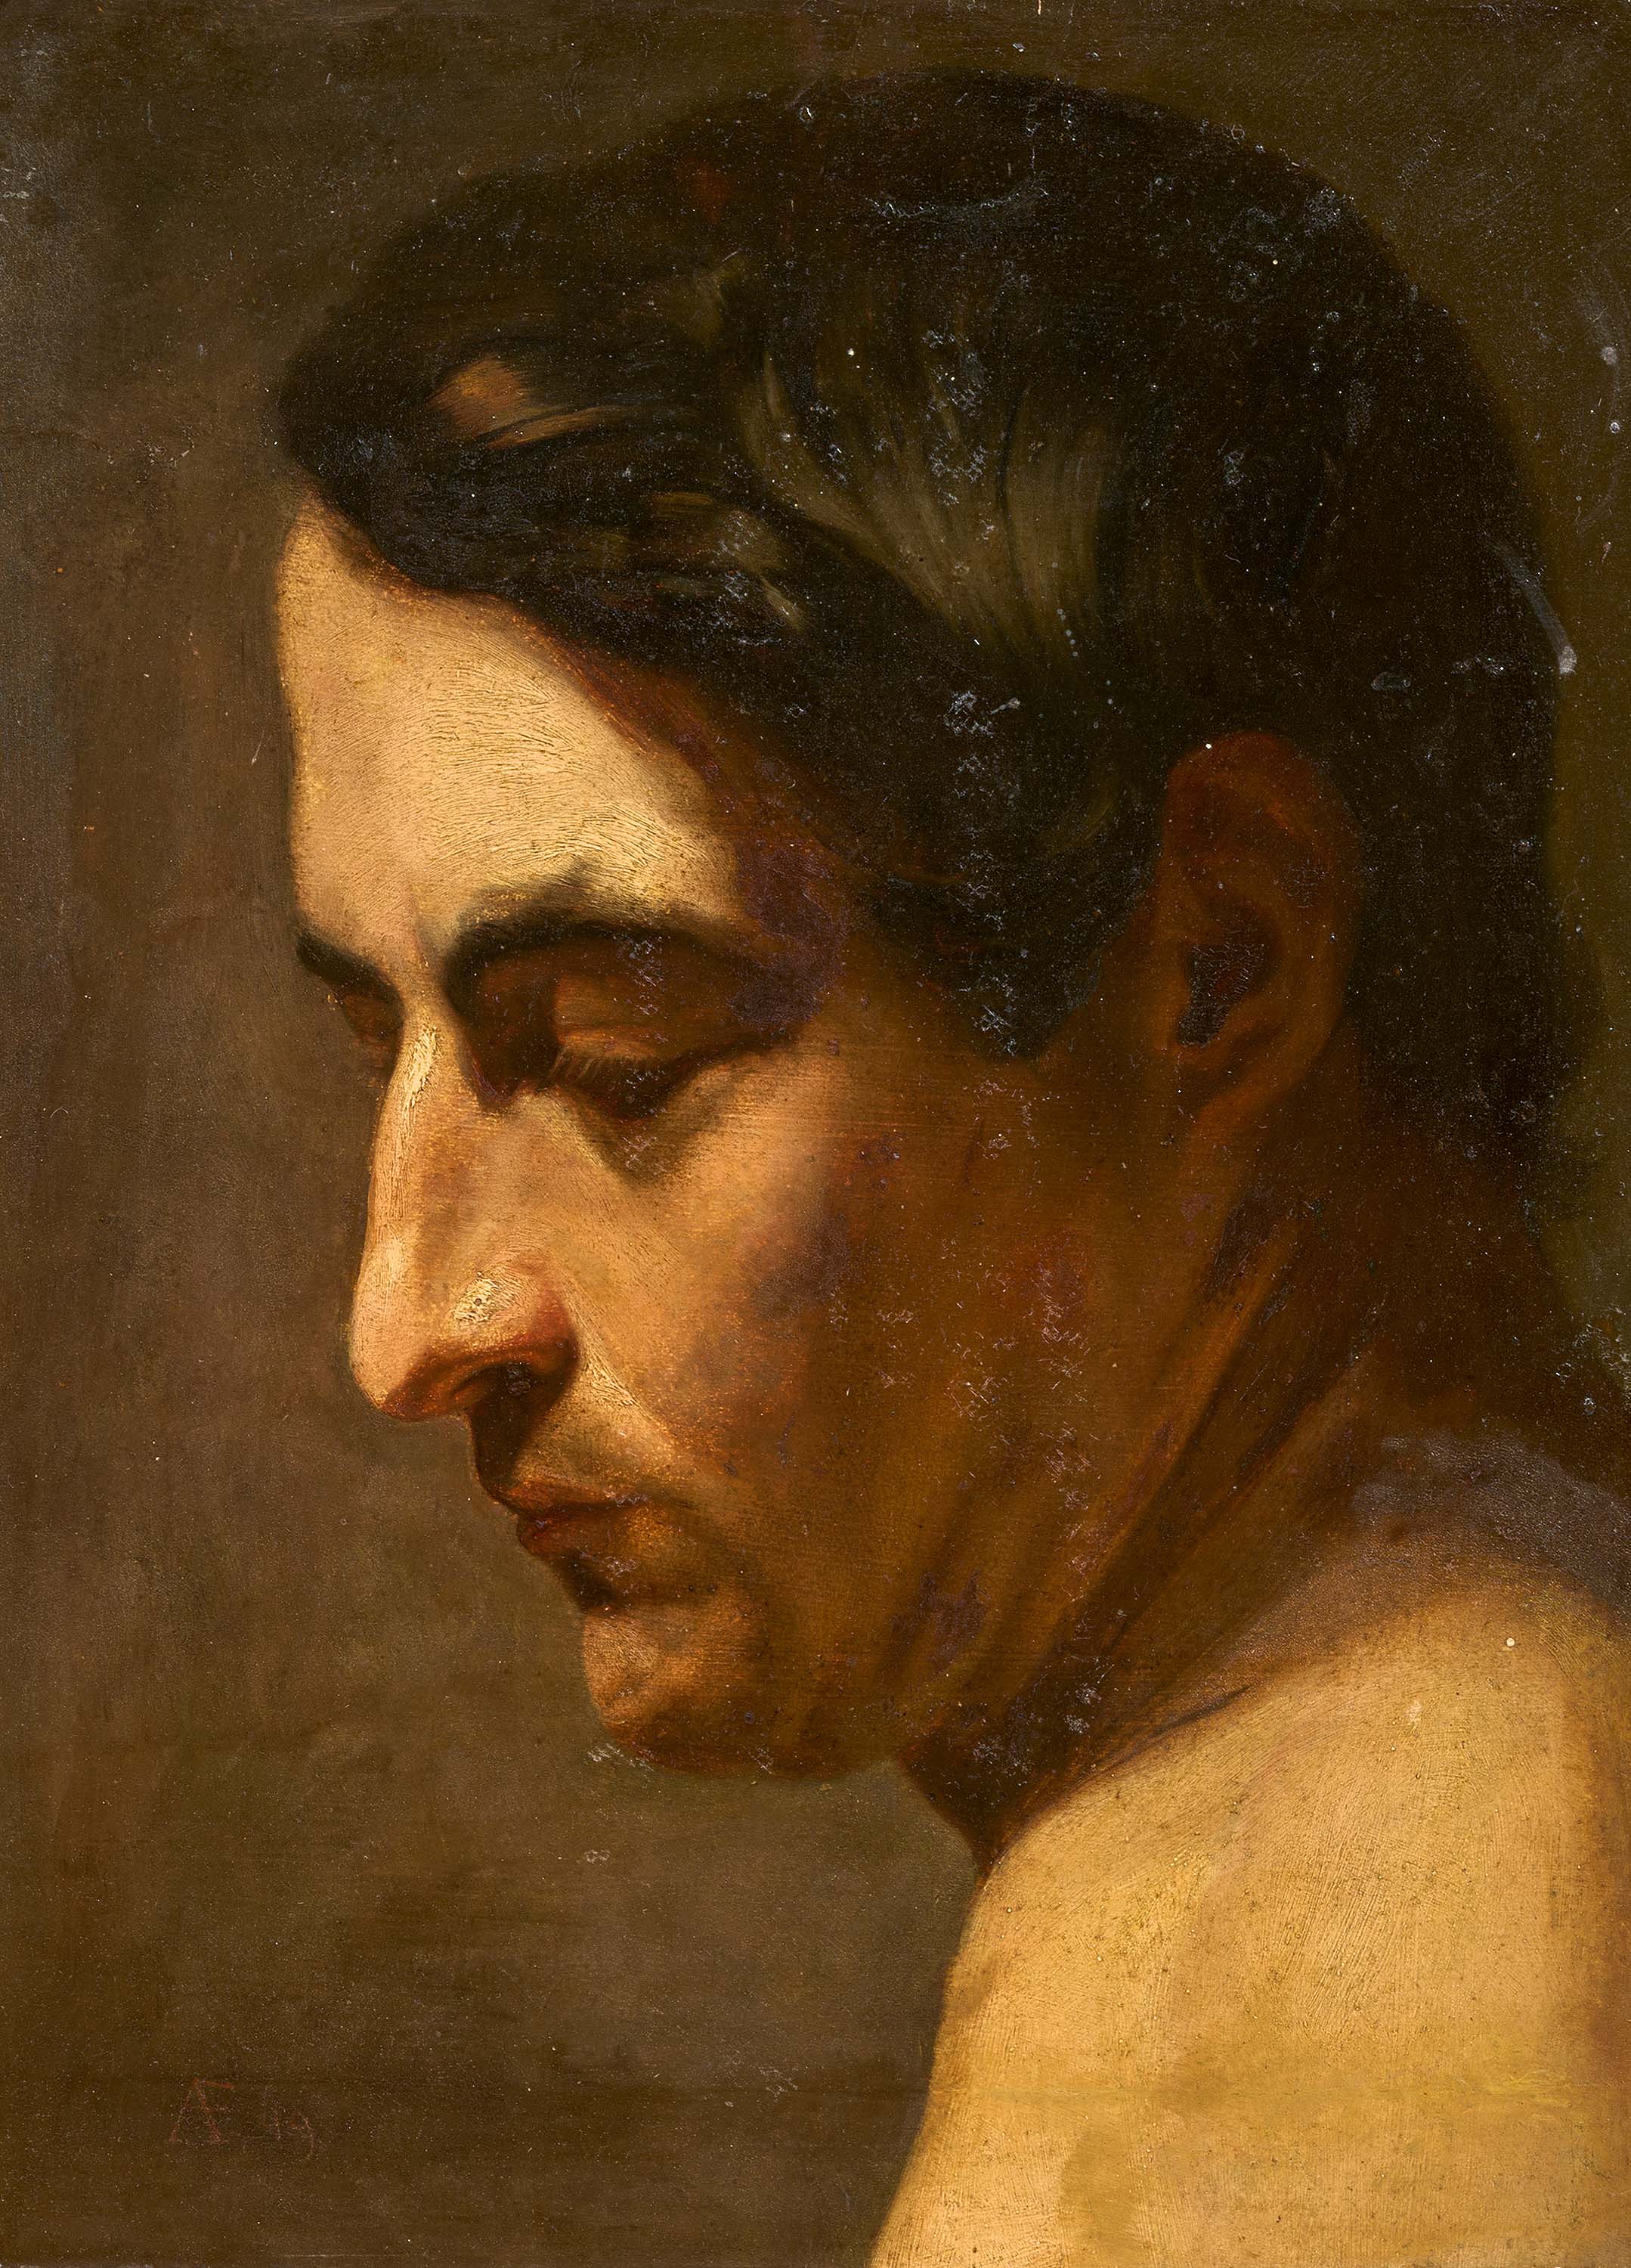 Anselm Feuerbach - Brustbild eines jungen Mannes im Profil nach links, 77065-2, Van Ham Kunstauktionen